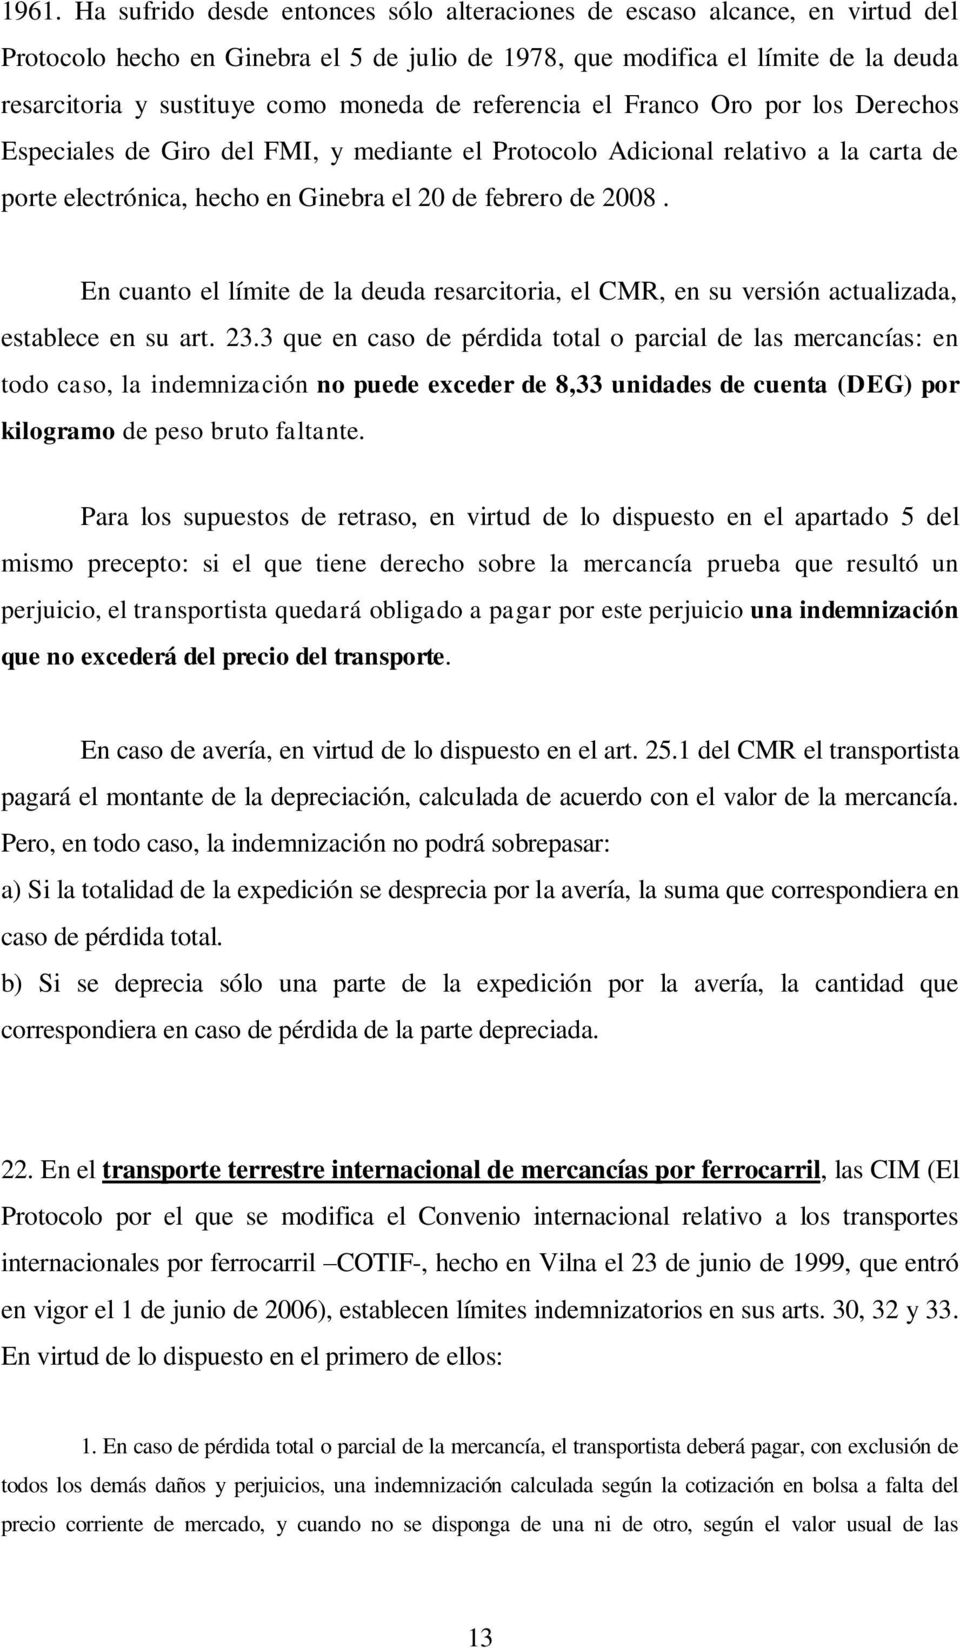 En cuanto el límite de la deuda resarcitoria, el CMR, en su versión actualizada, establece en su art. 23.